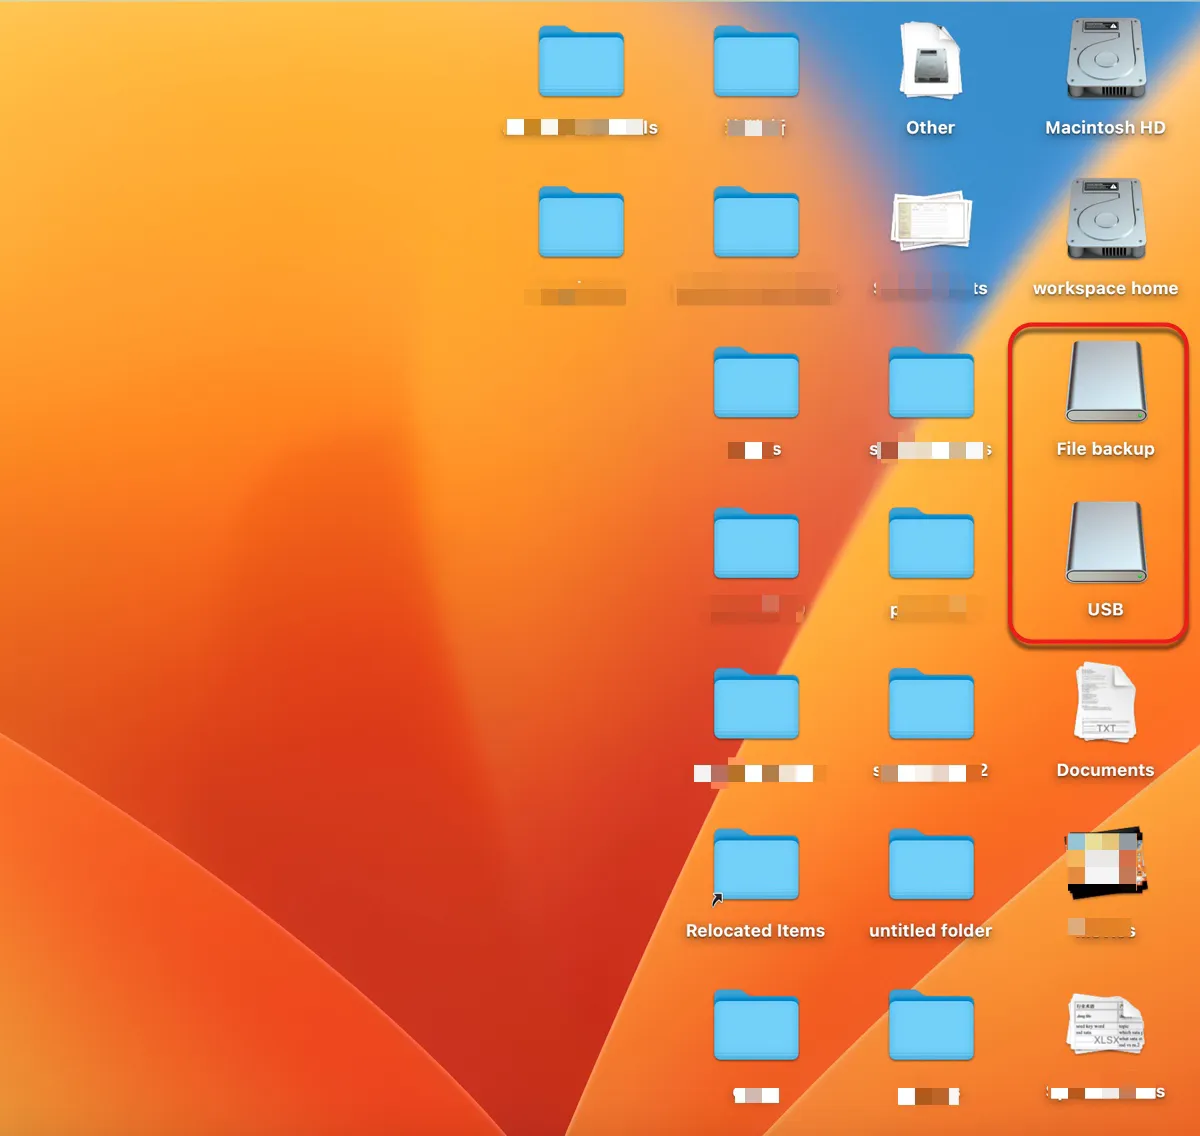 Afficher les périphériques USB sur le bureau du Mac